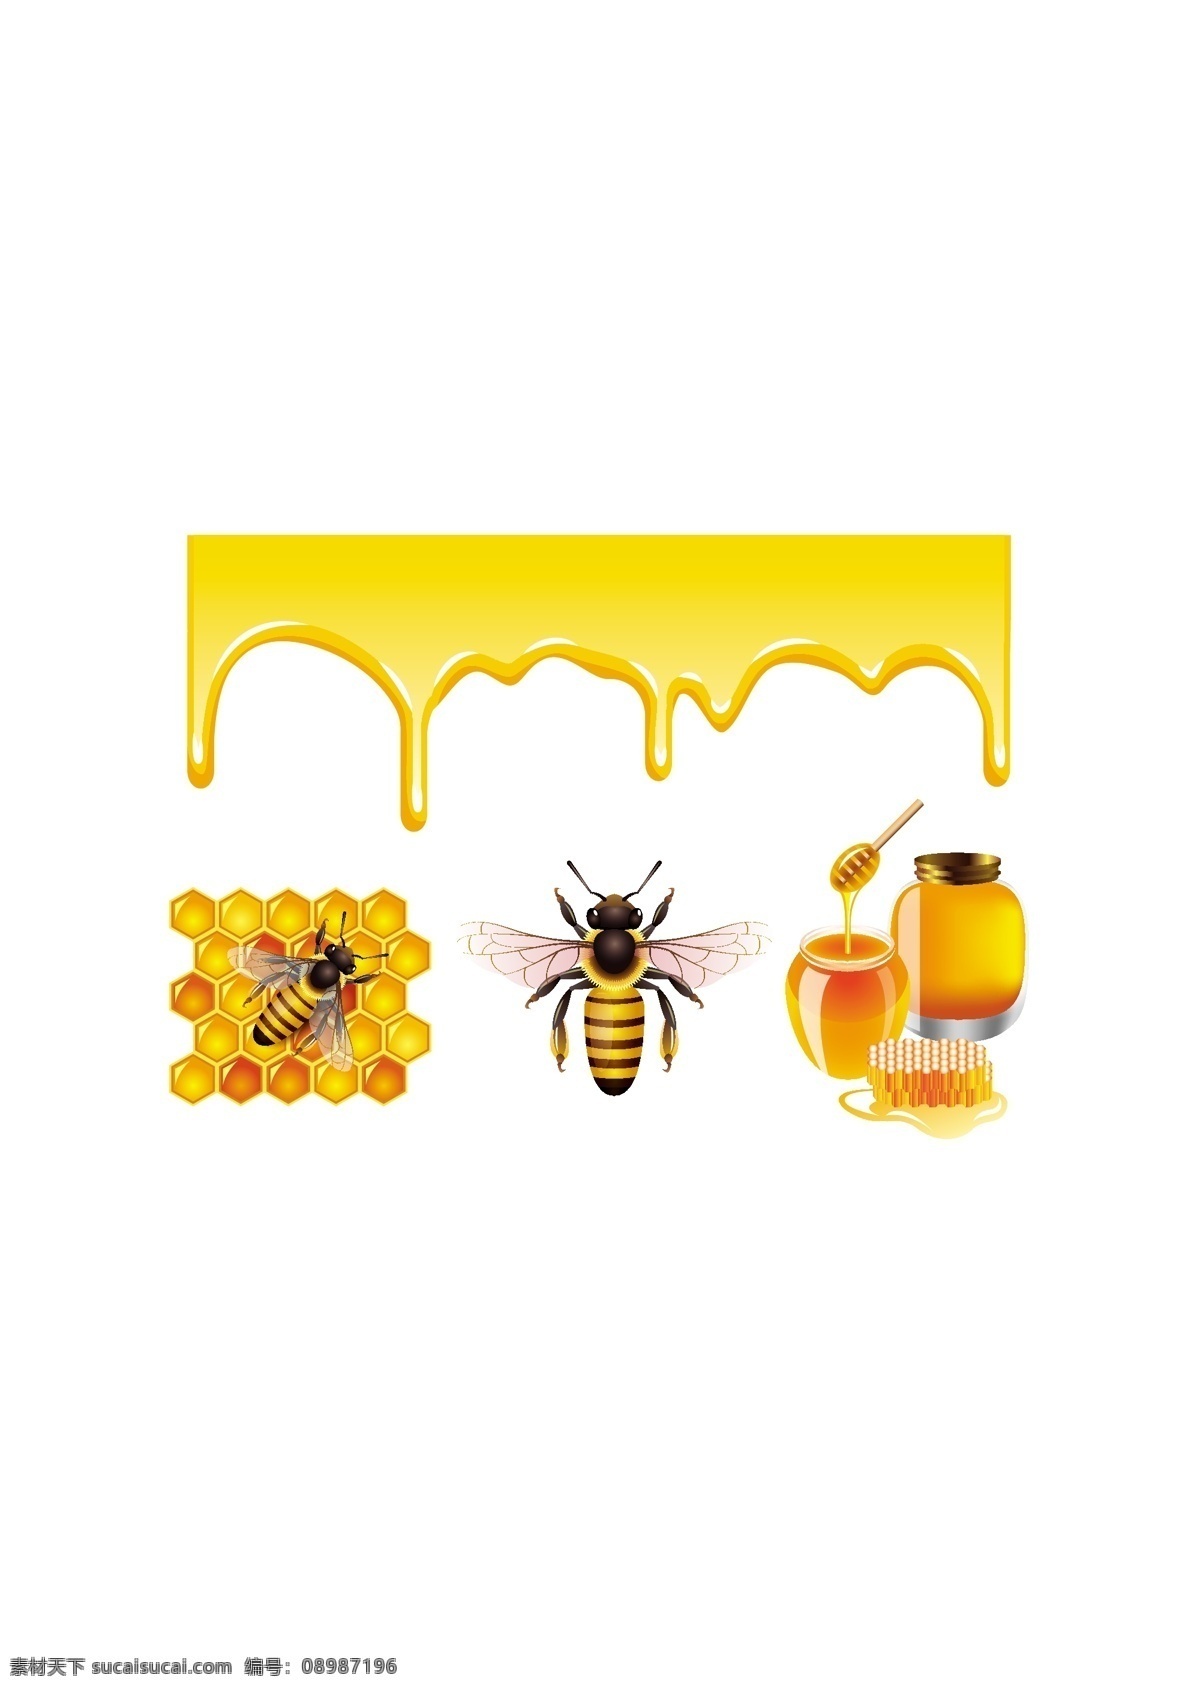 蜜蜂 蜂蜜 矢量 液态 搅拌棒 蜂巢 矢量图 动物植物矢量 生物世界 昆虫